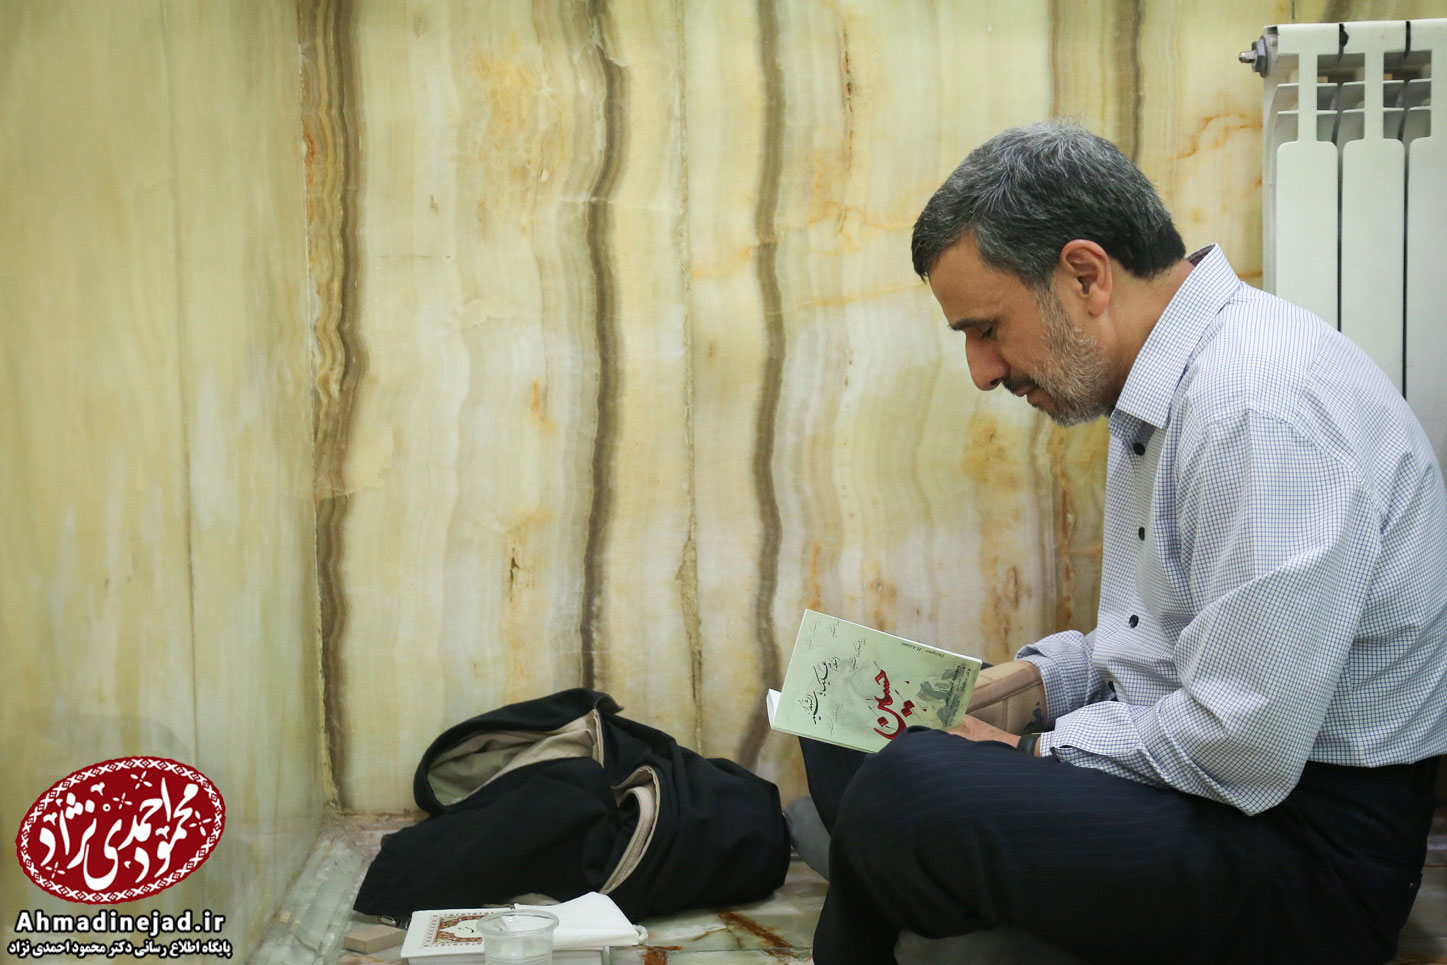 احمدی نژاد در مراسم دعای عرفه امامزاده زید+ عکس